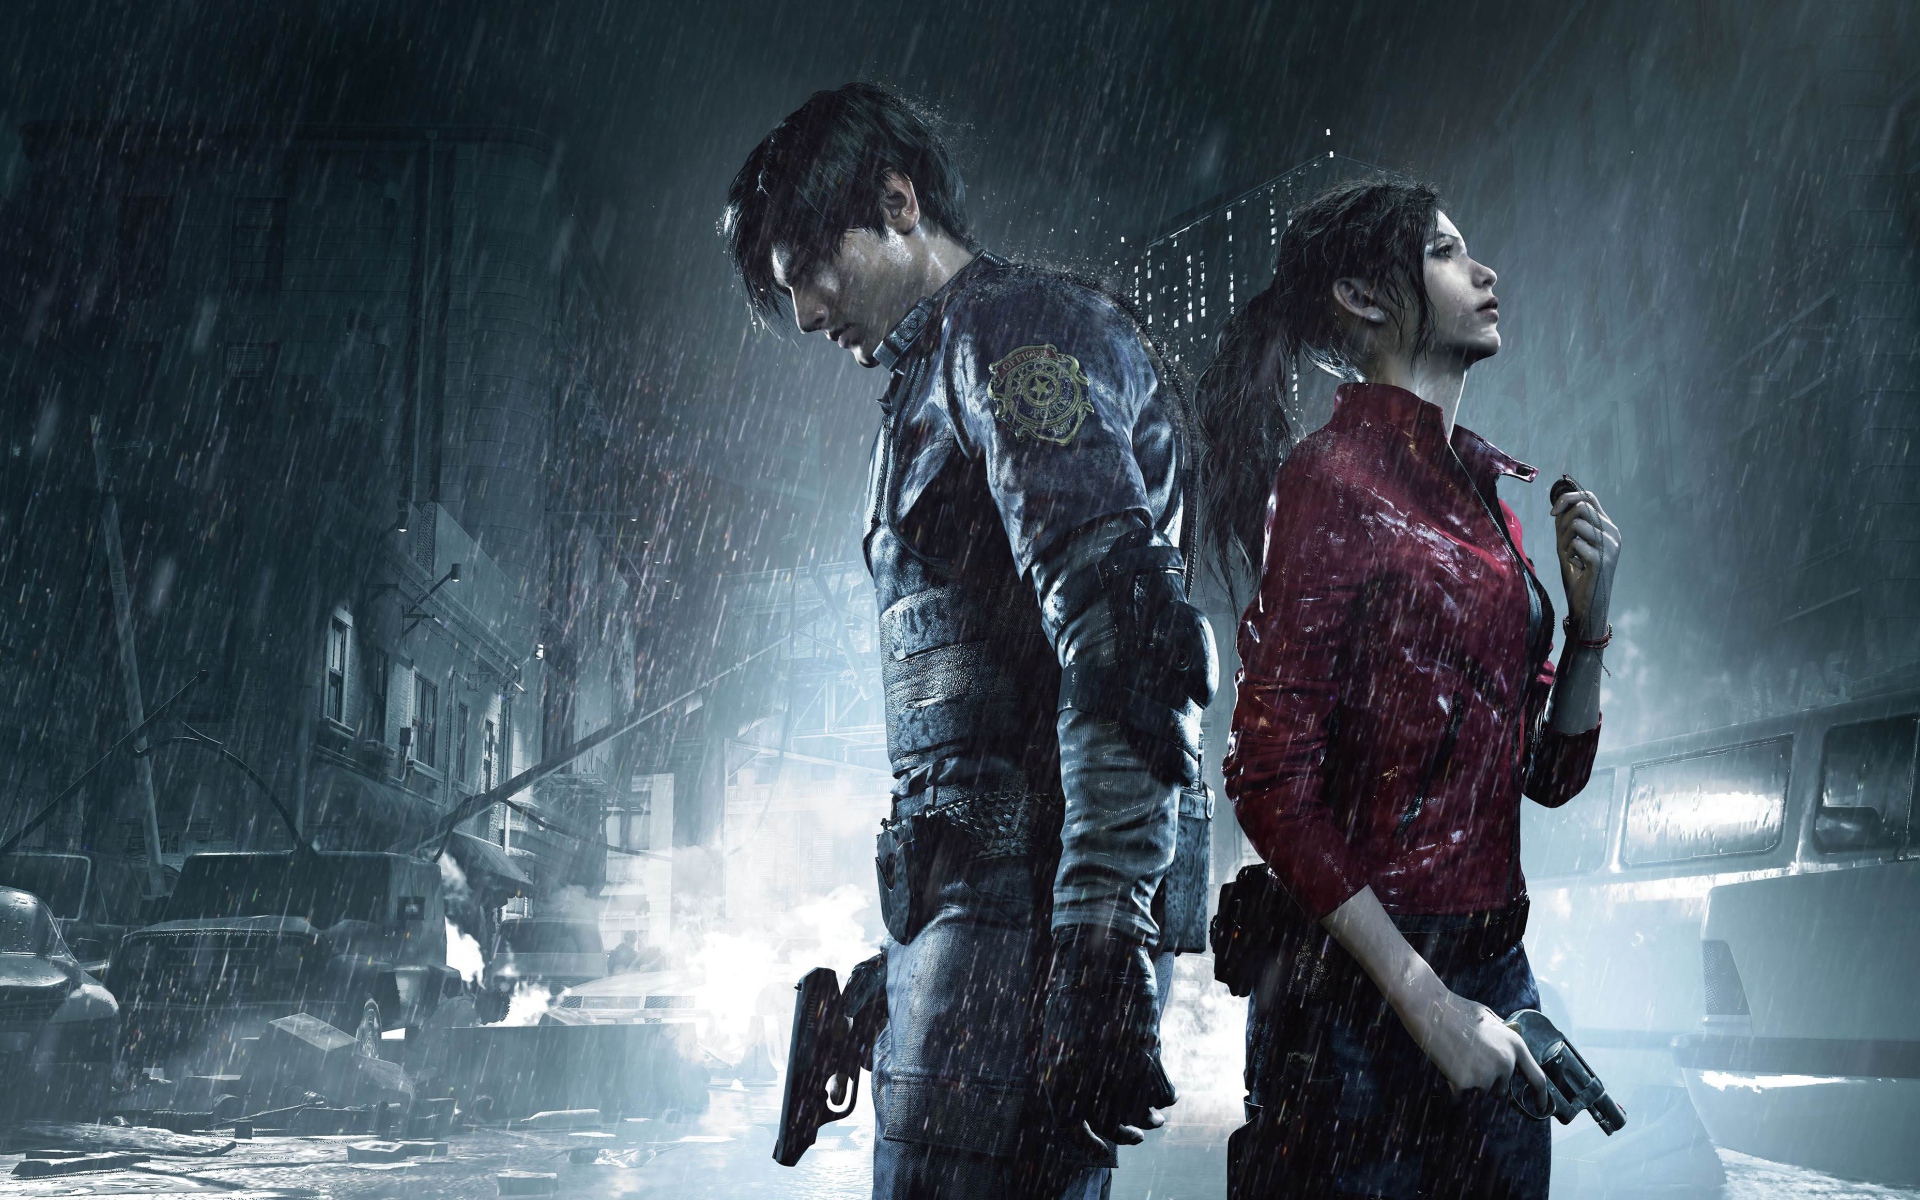 Персонажи компьютерной игры Resident Evil 2, 2019 года под дождем